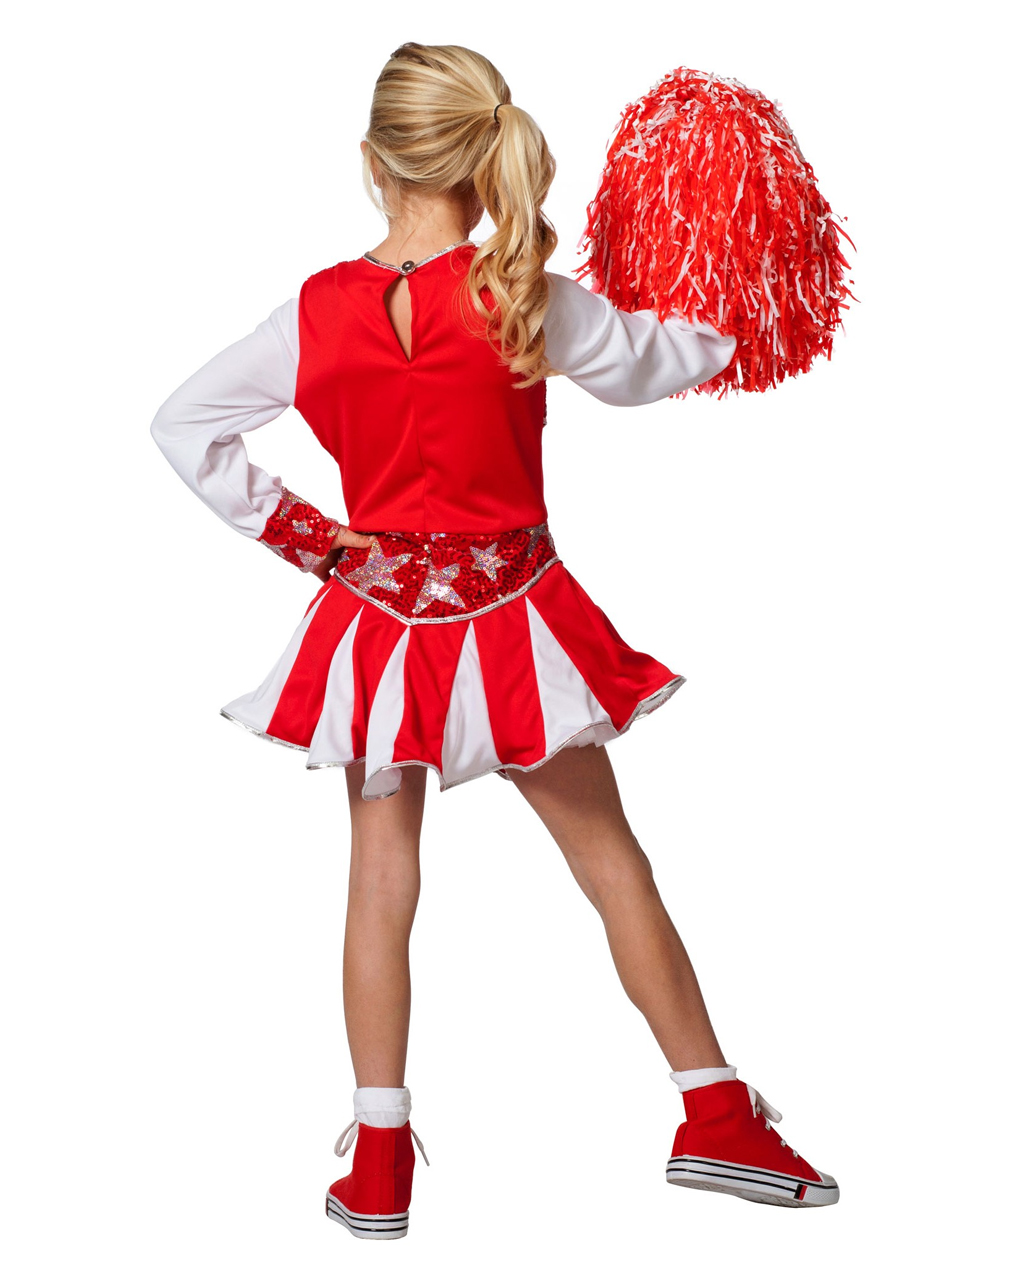 WIL Kinder Kostüm Cheerleader Tänzerin Karneval Fasching 